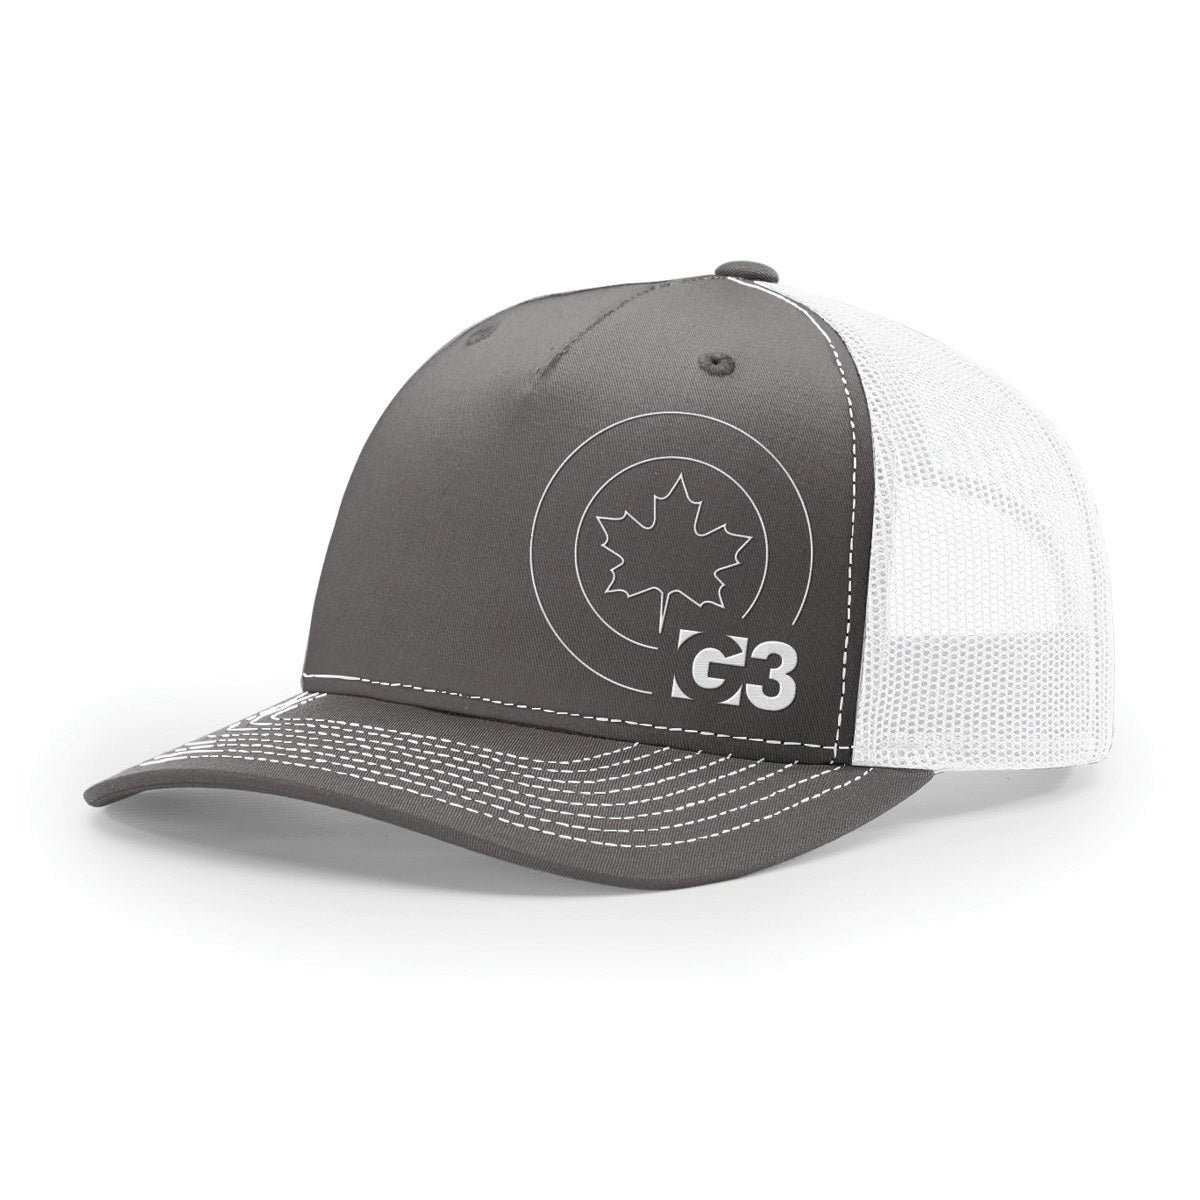 G3 Trucker Hat